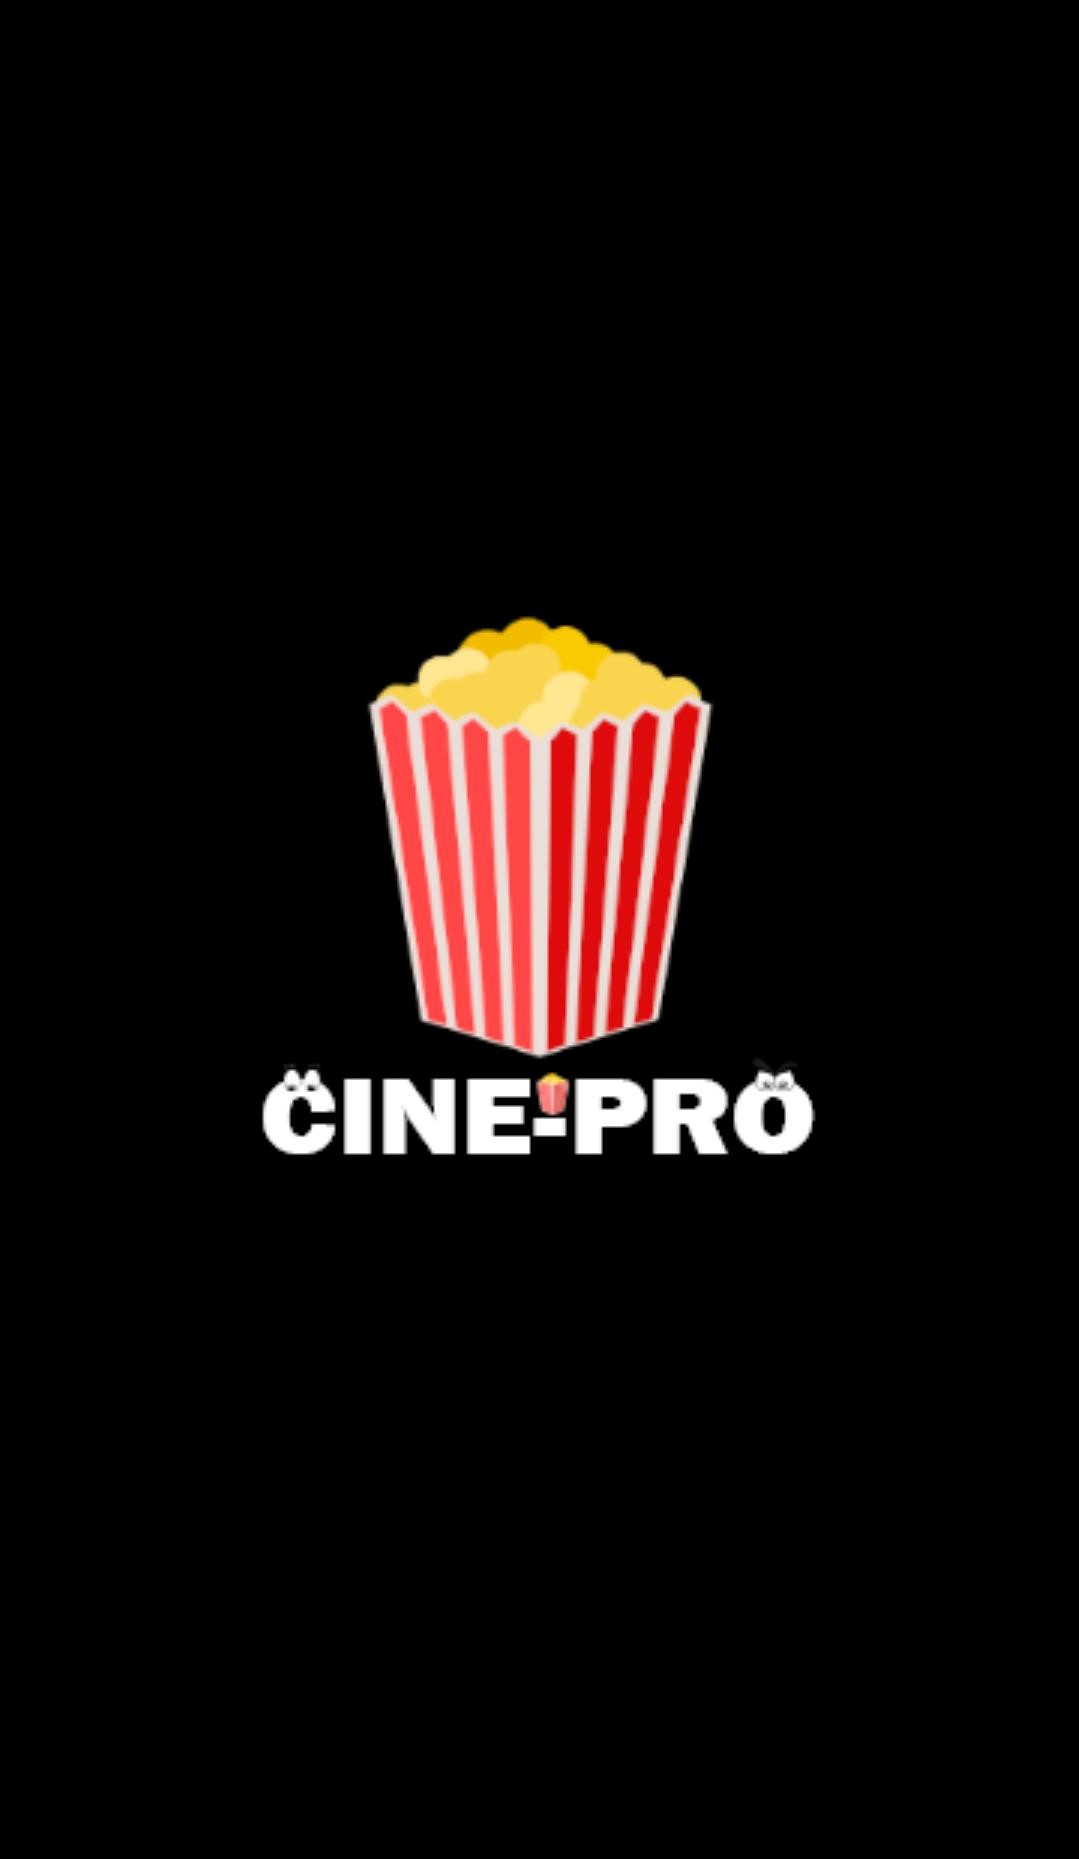 Cine PRO apk para Android y TV Box